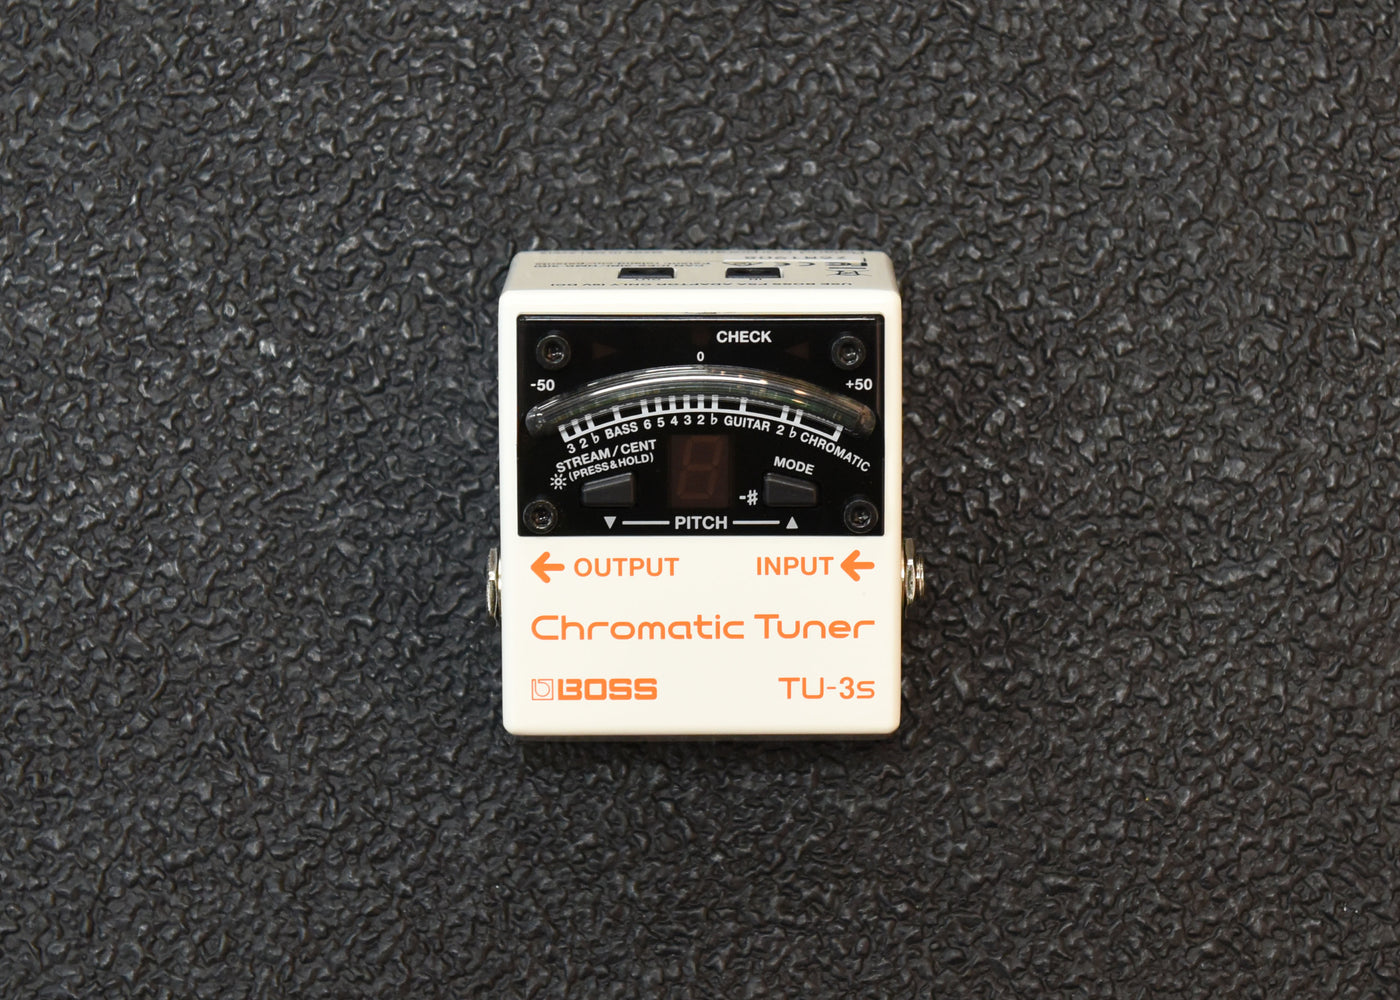 TU-3S Chromatic Tuner